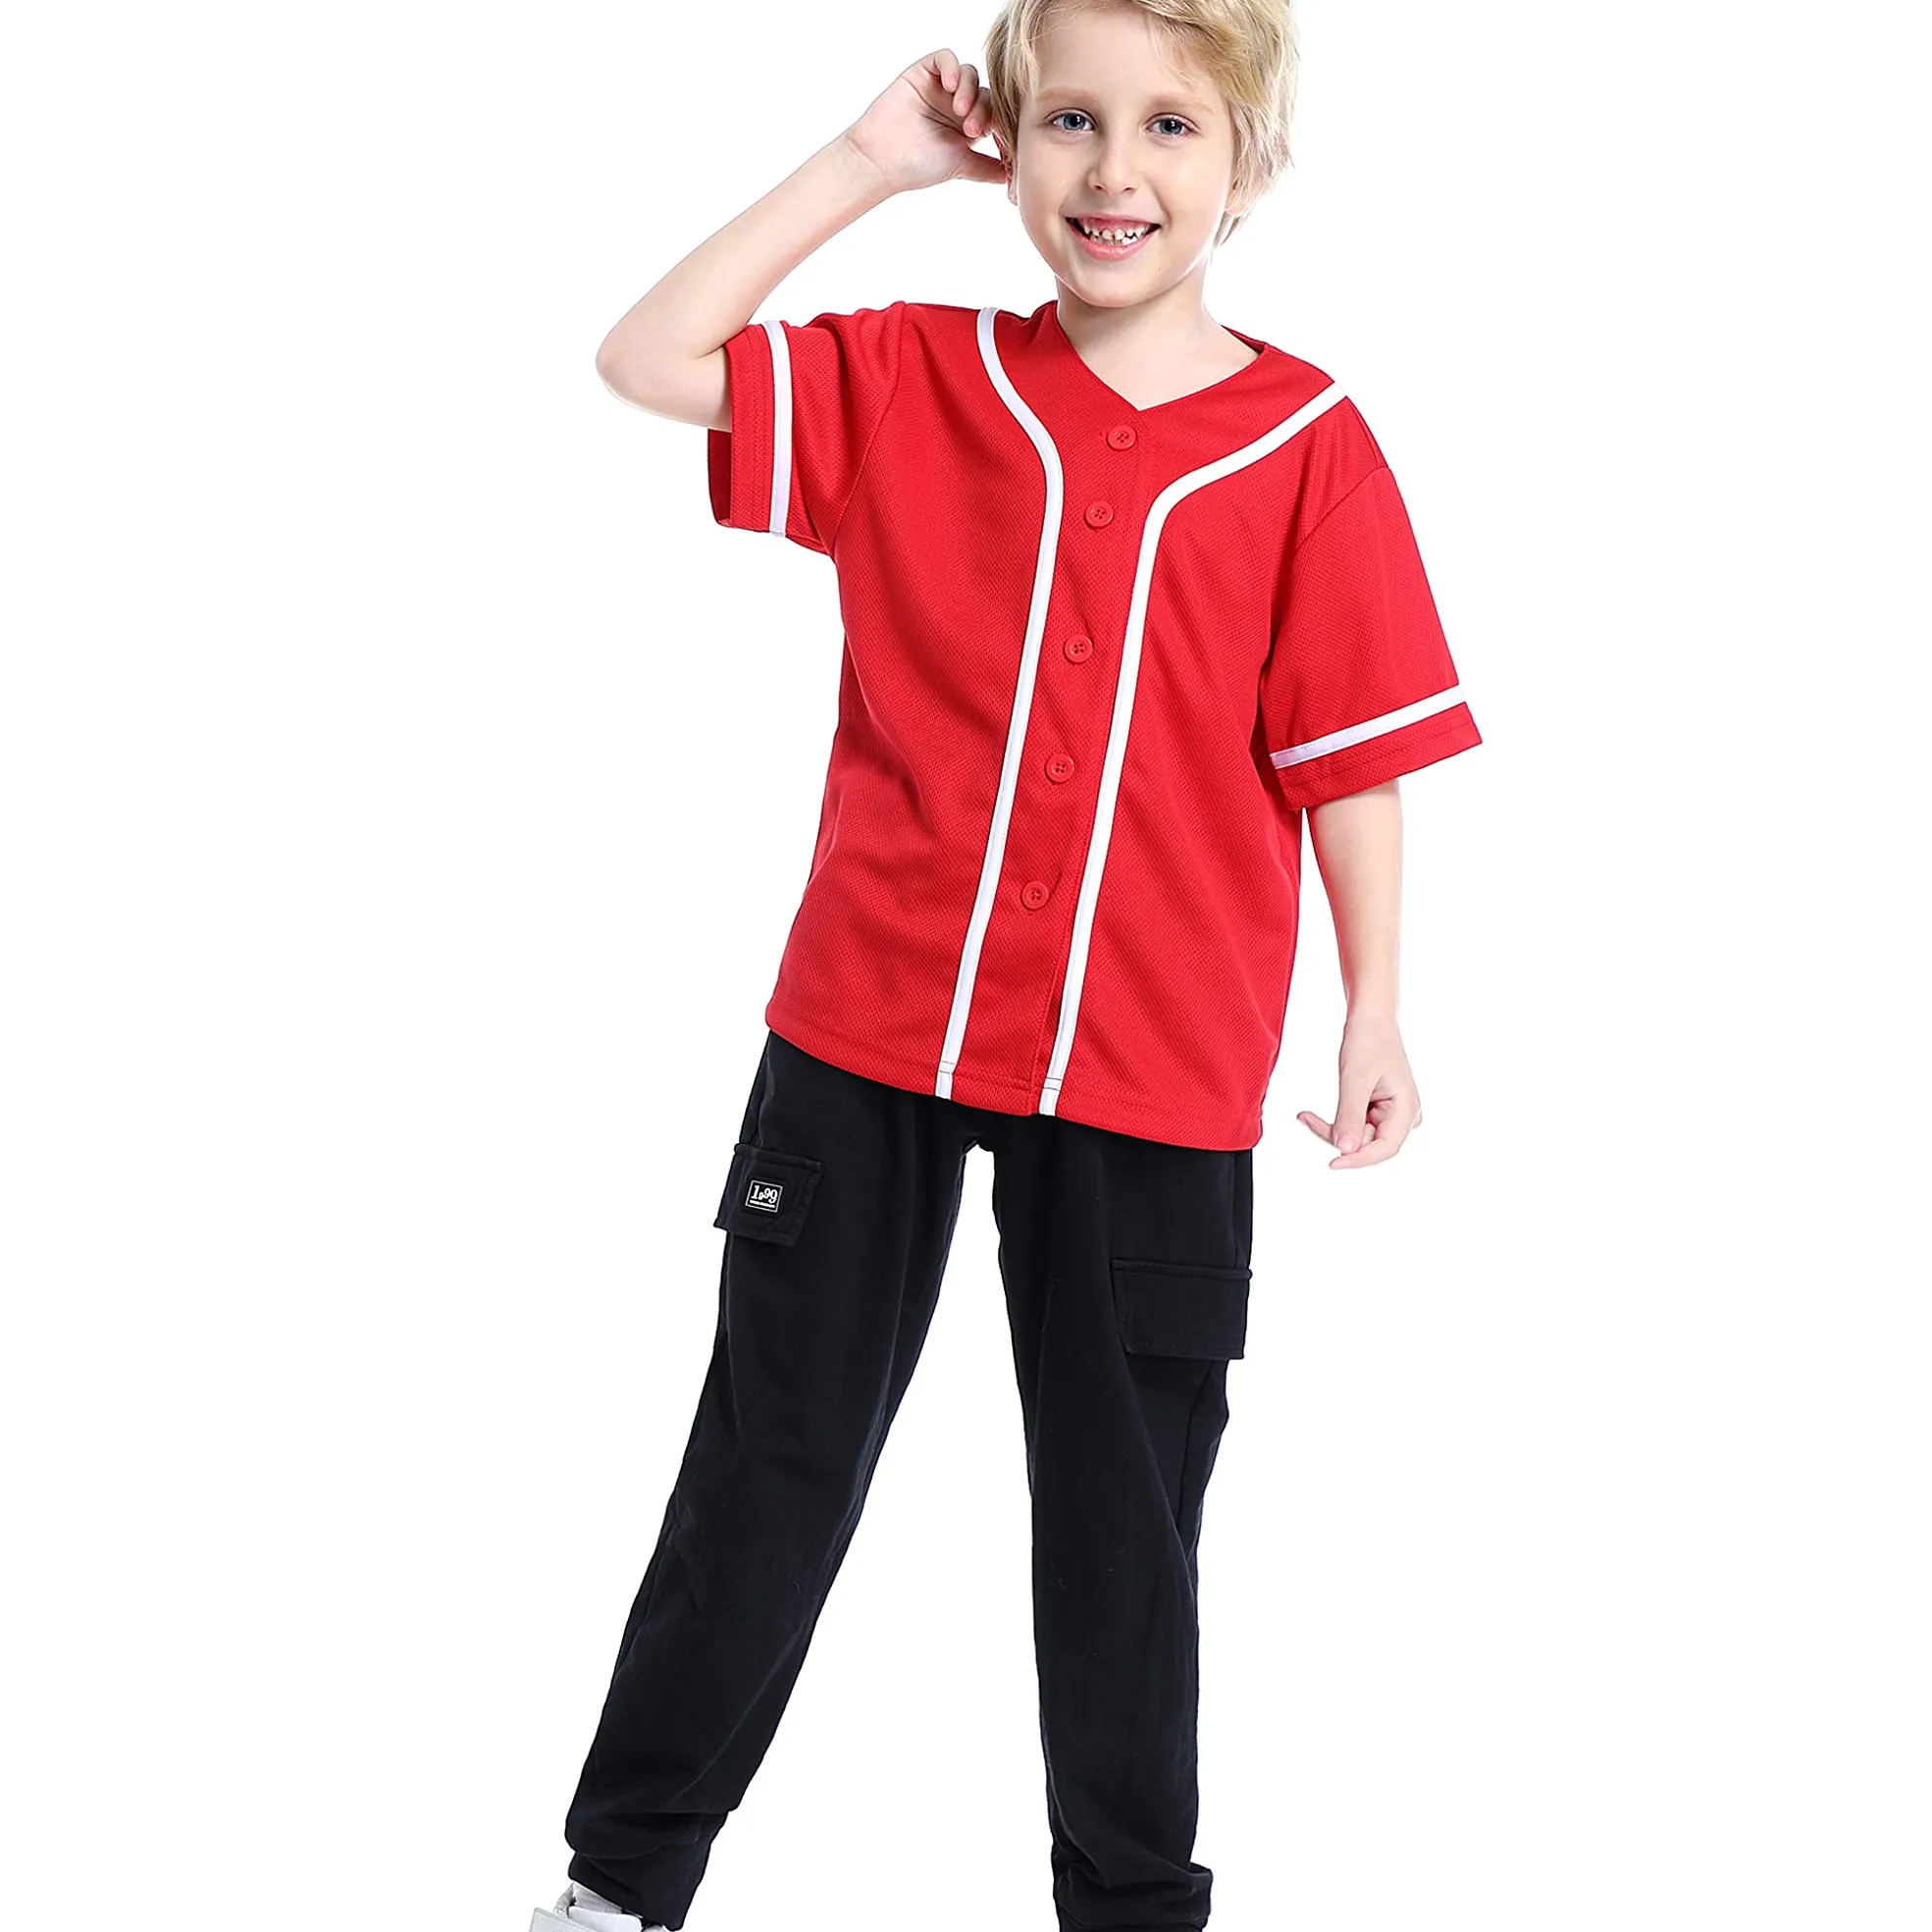 Camisa de beisebol para meninos, camiseta infantil de softball com botões